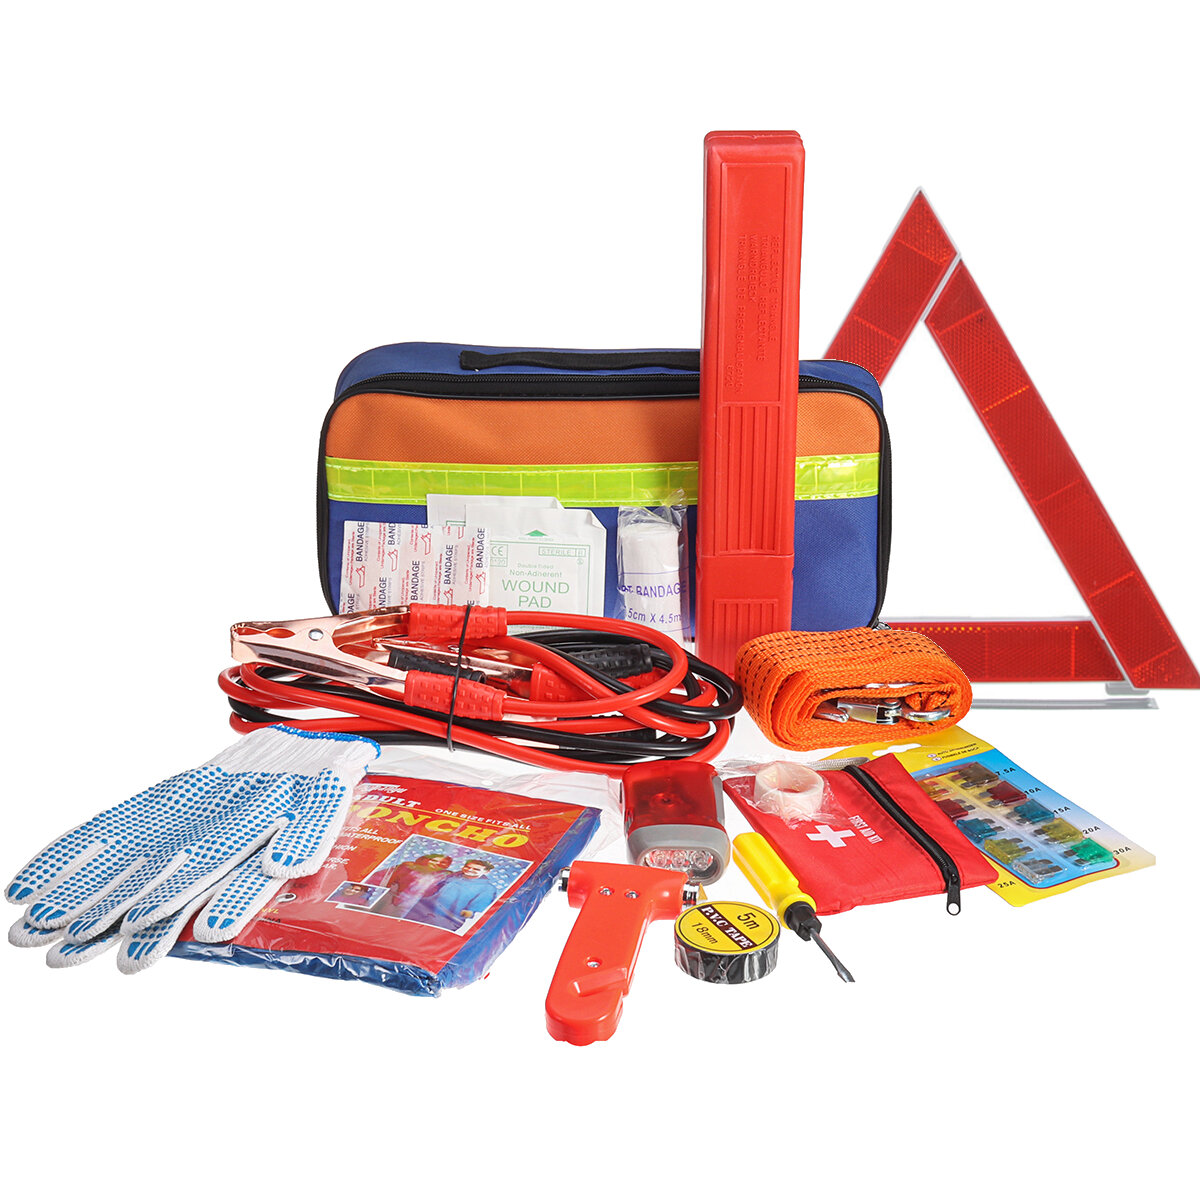 36 ADET Acil Kit Araba Parçalar Çanta Uyarı Üçgen El Feneri Güvenliği Hammer İlk Yardım Kit Outdoor Seyahat Kampçılık